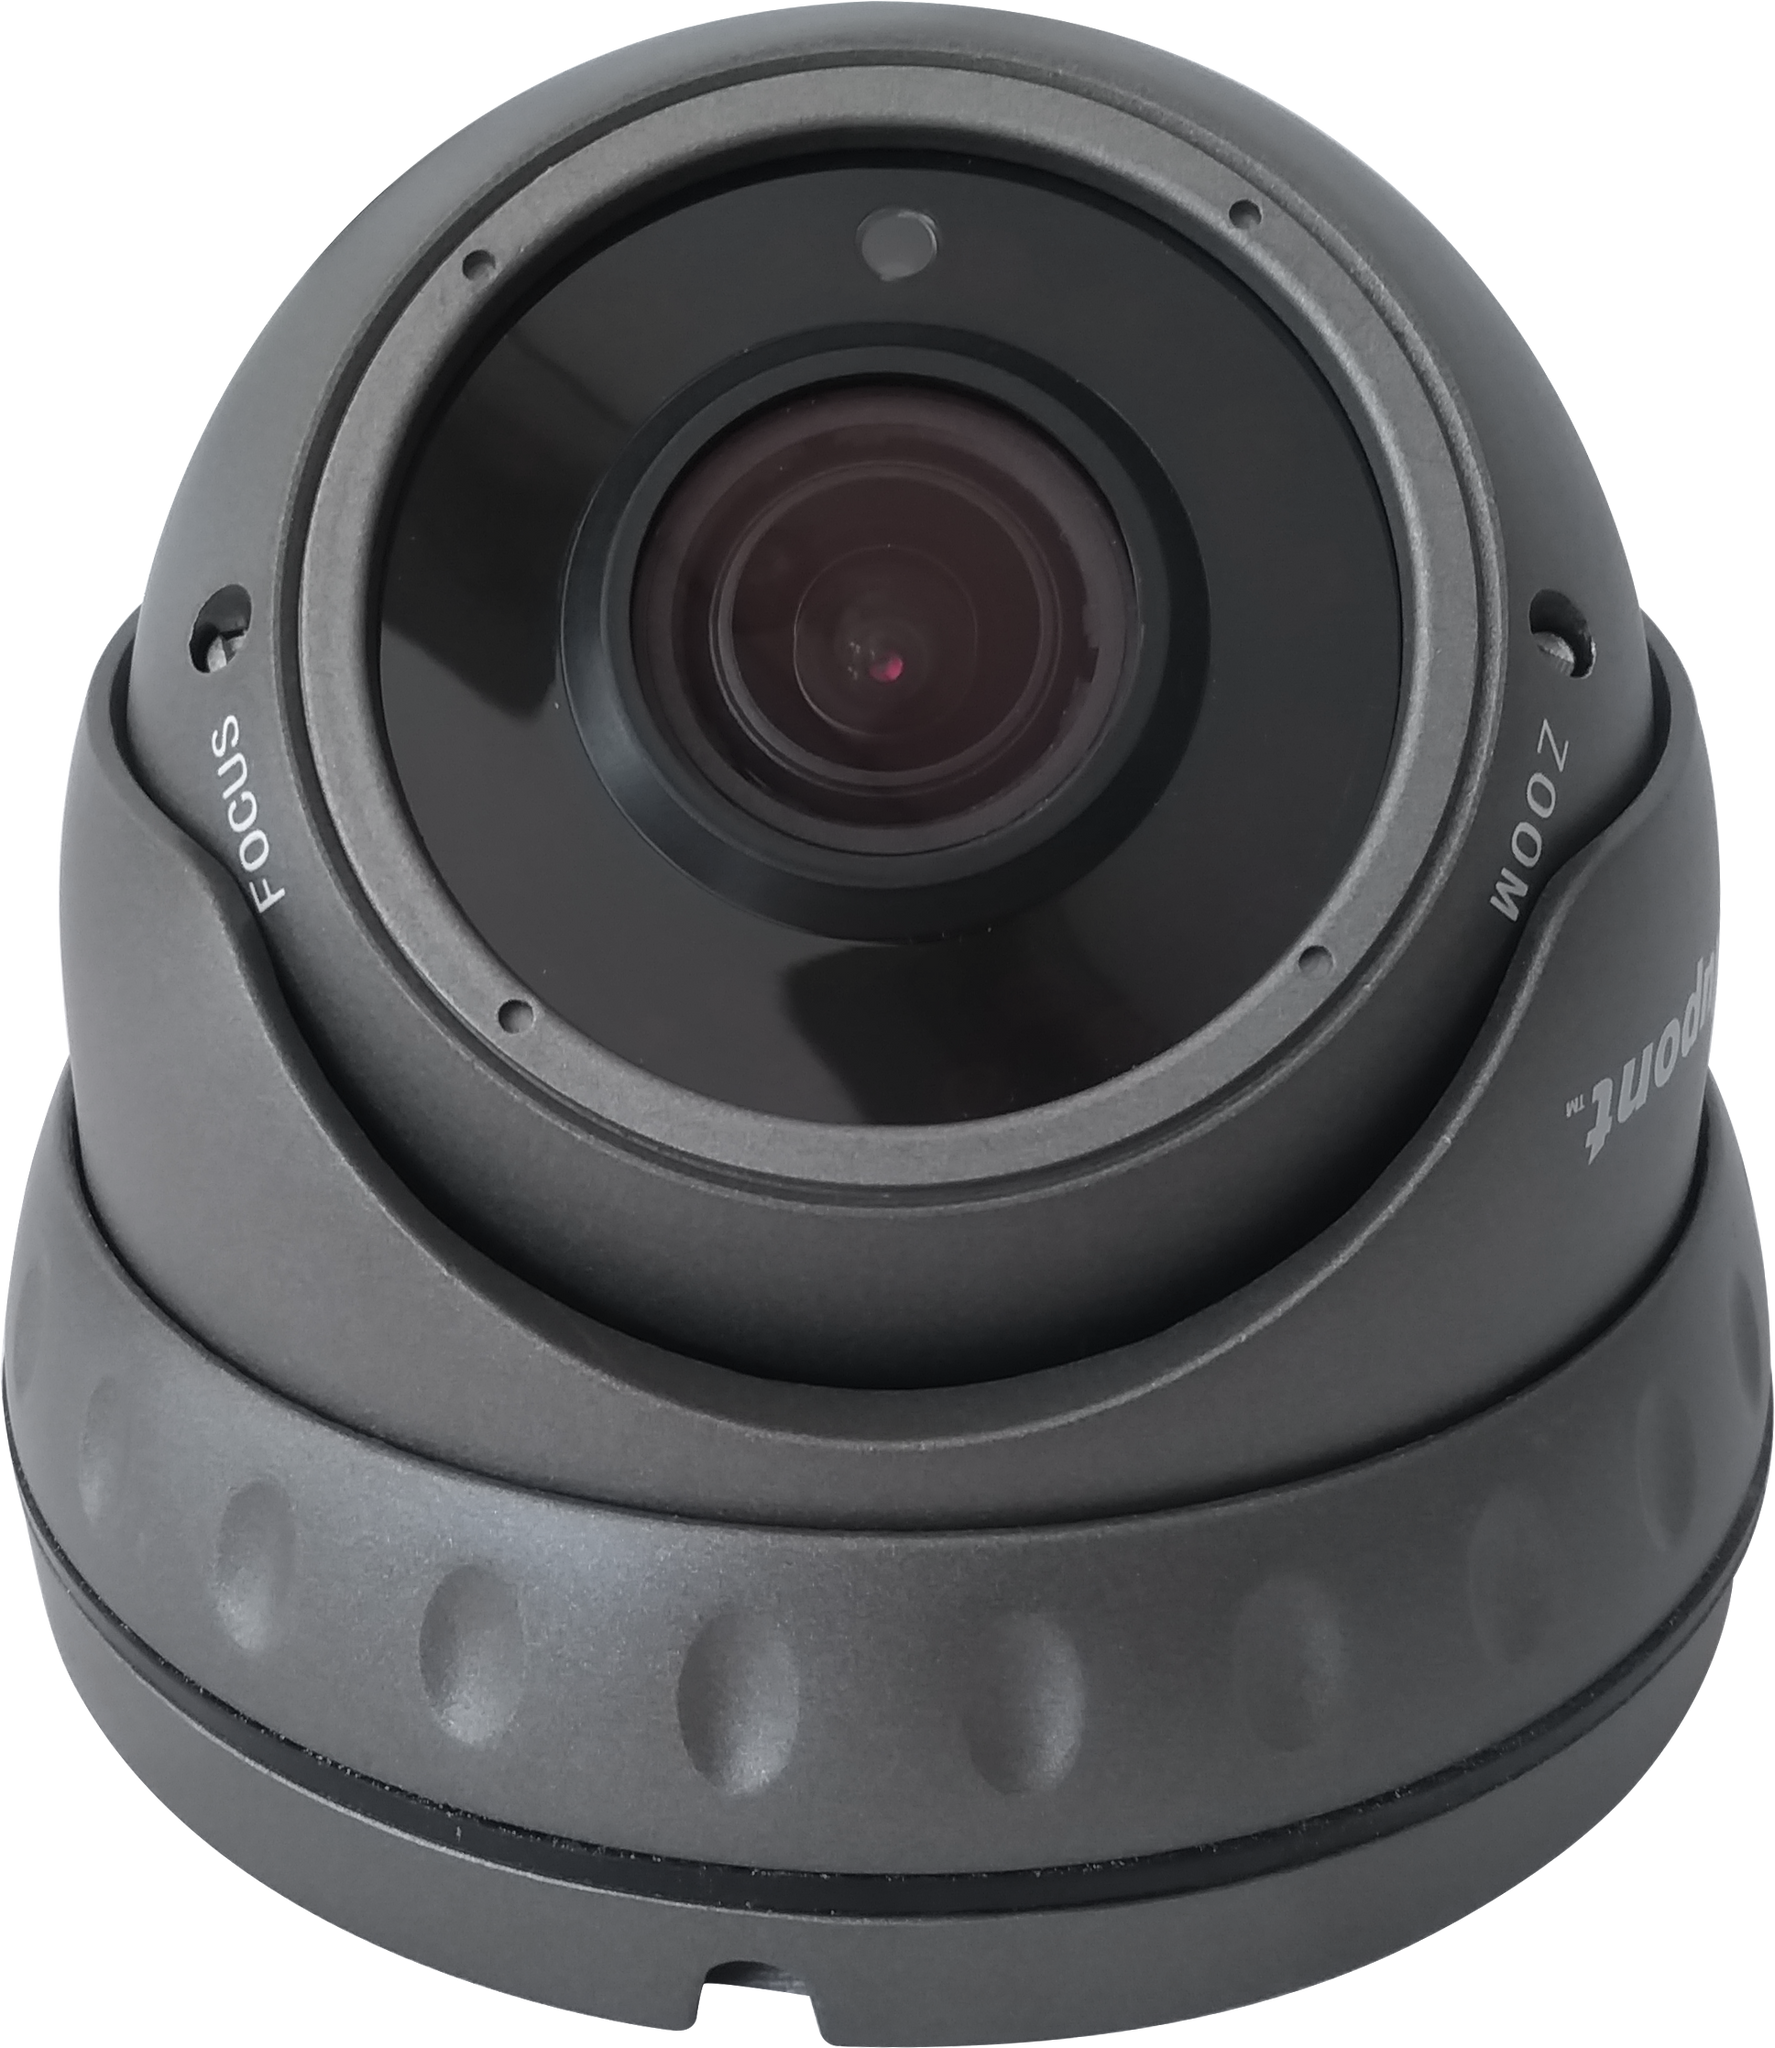 2.1MP 4in1 Grey Dome CCTV Camera